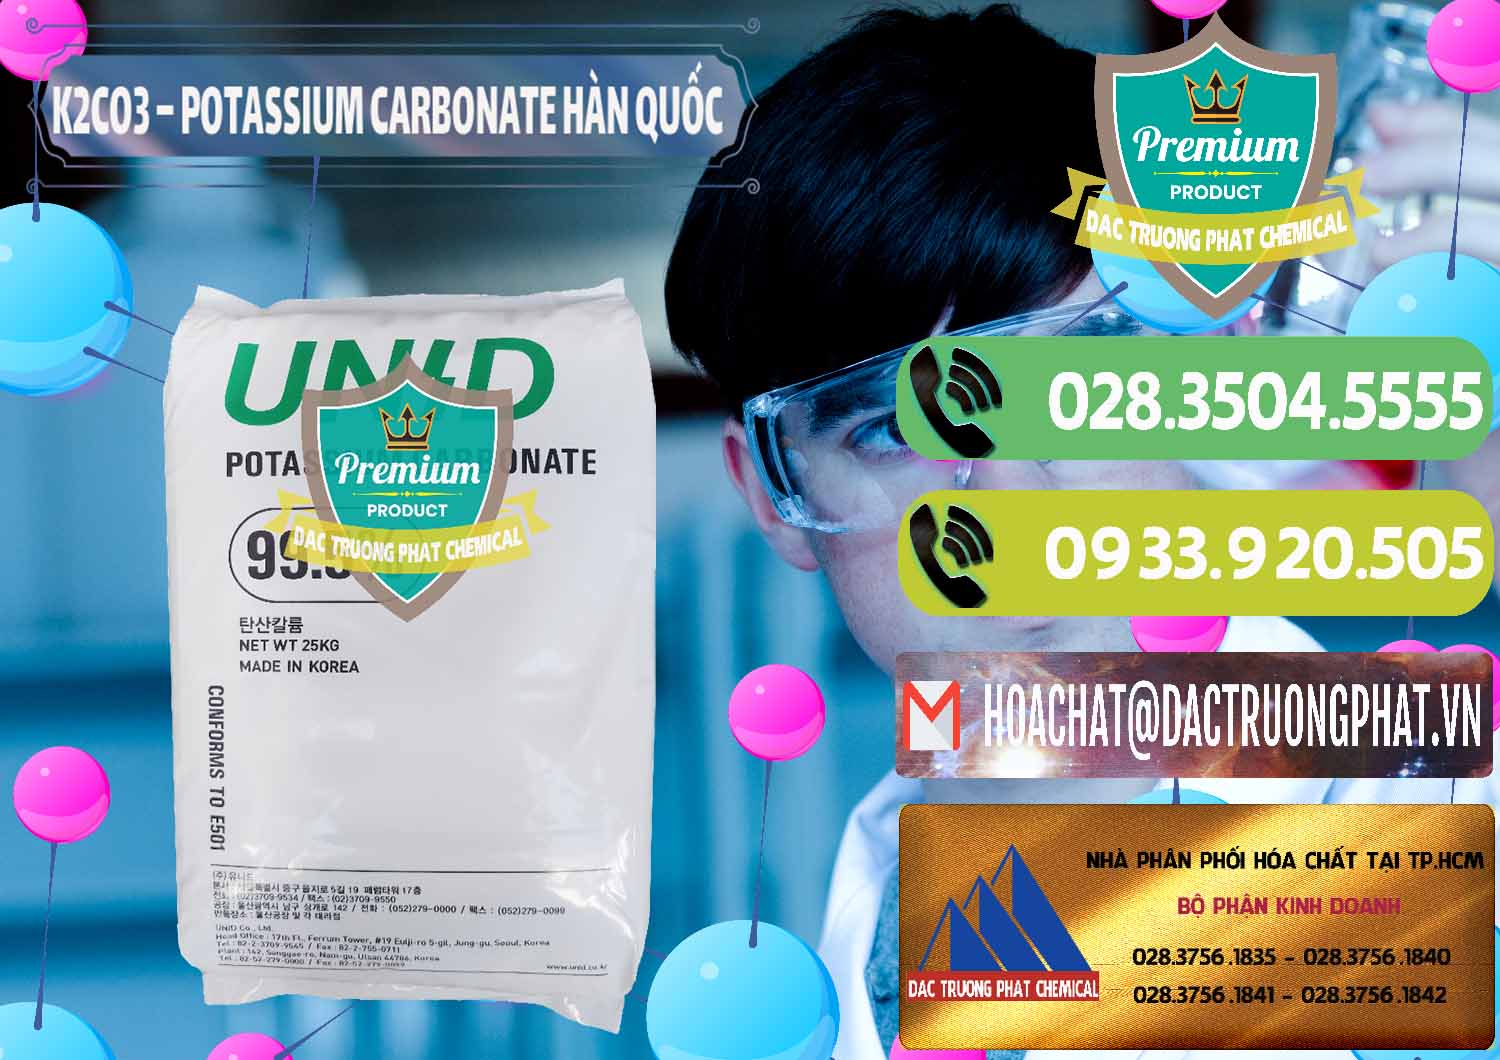 Cung cấp và bán K2Co3 – Potassium Carbonate Unid Hàn Quốc Korea - 0081 - Công ty kinh doanh & cung cấp hóa chất tại TP.HCM - hoachatmientay.vn